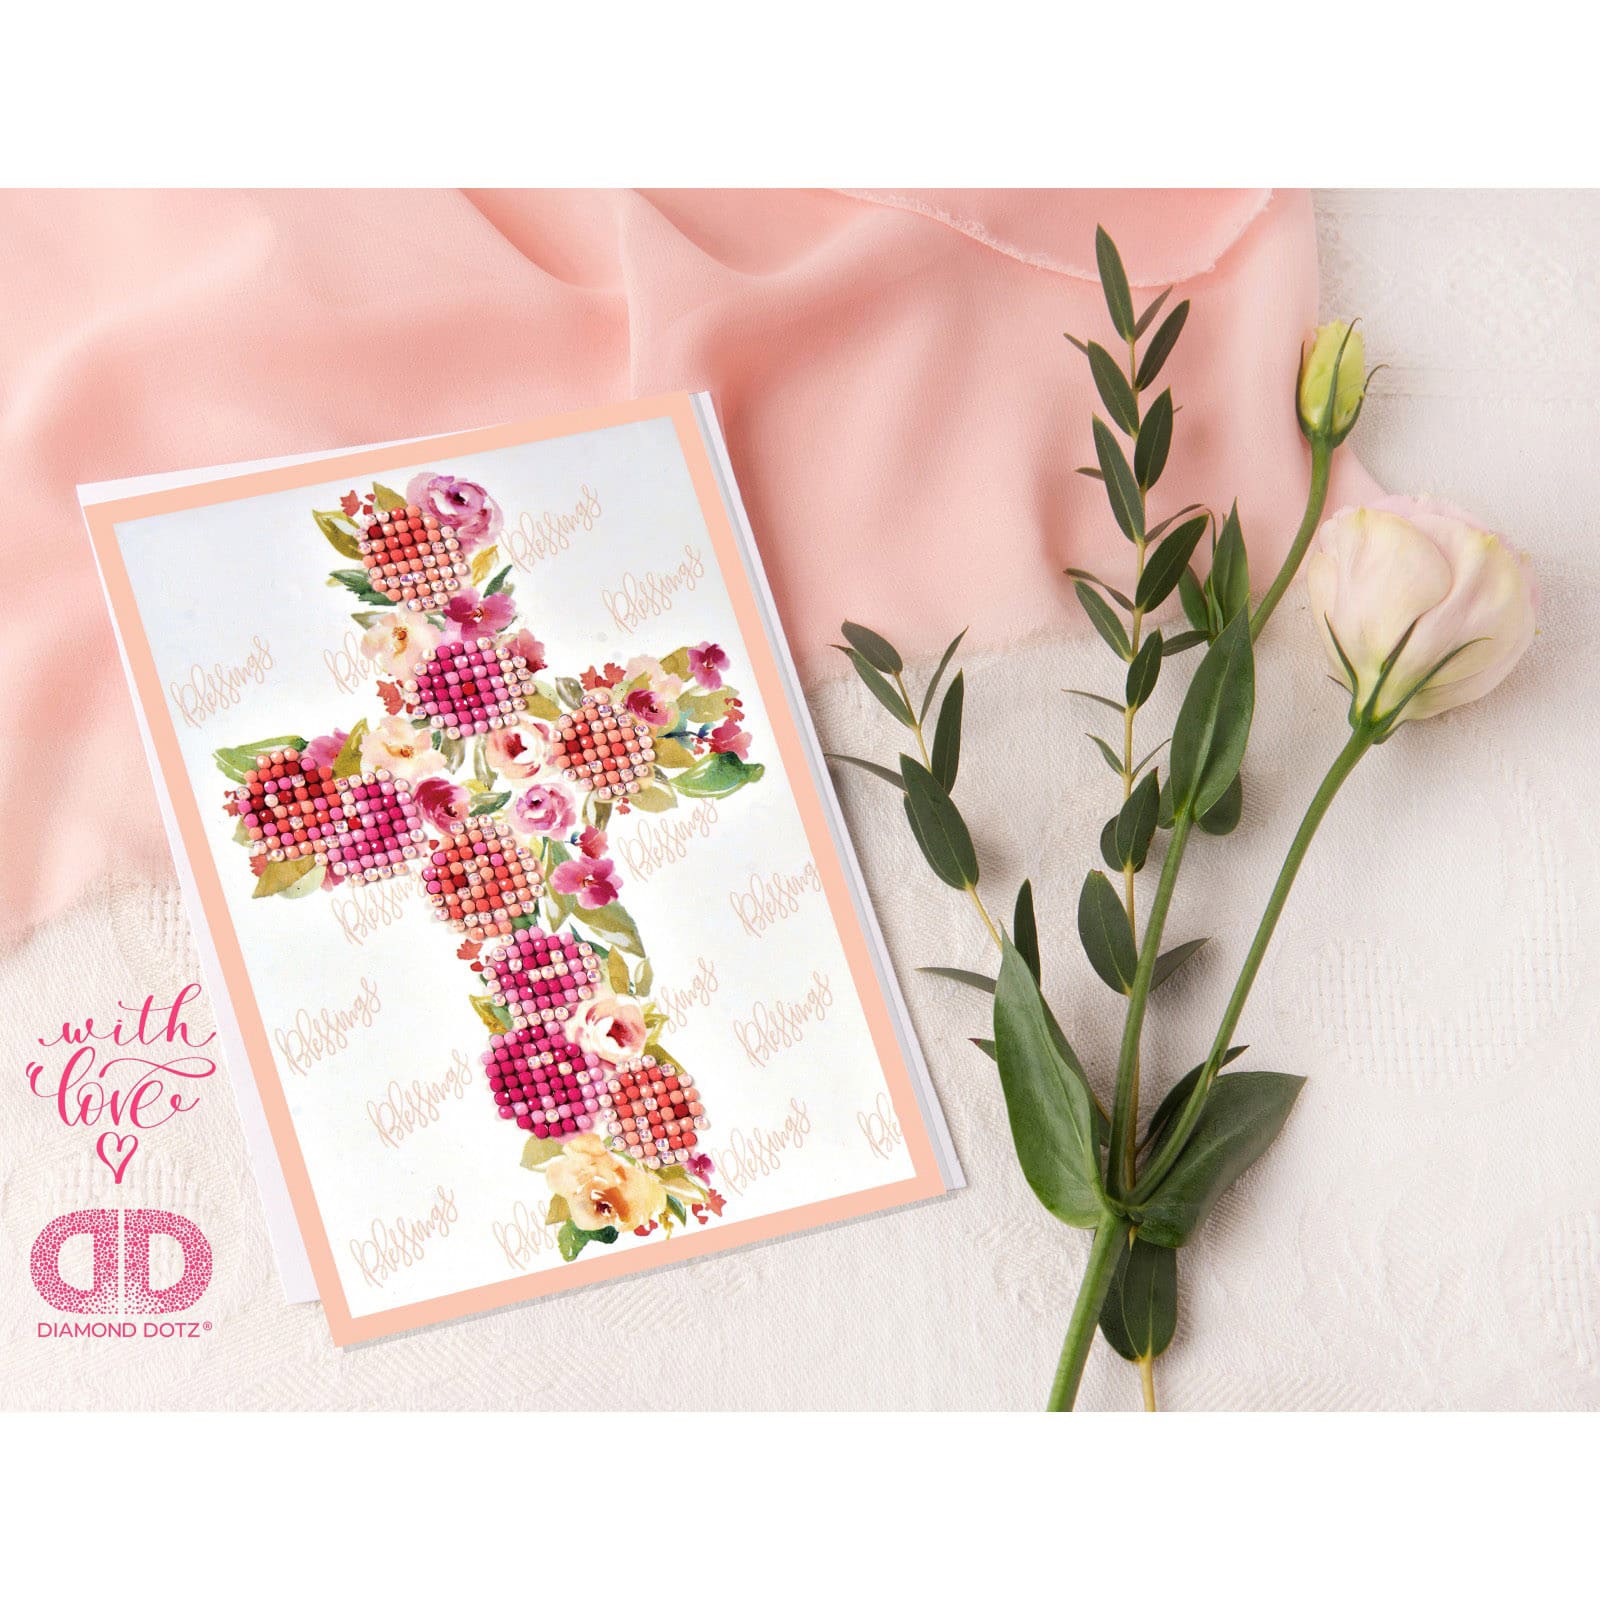 Diamond Dotz&#xAE; Blessings Diamond Painting Greeting Card Kit